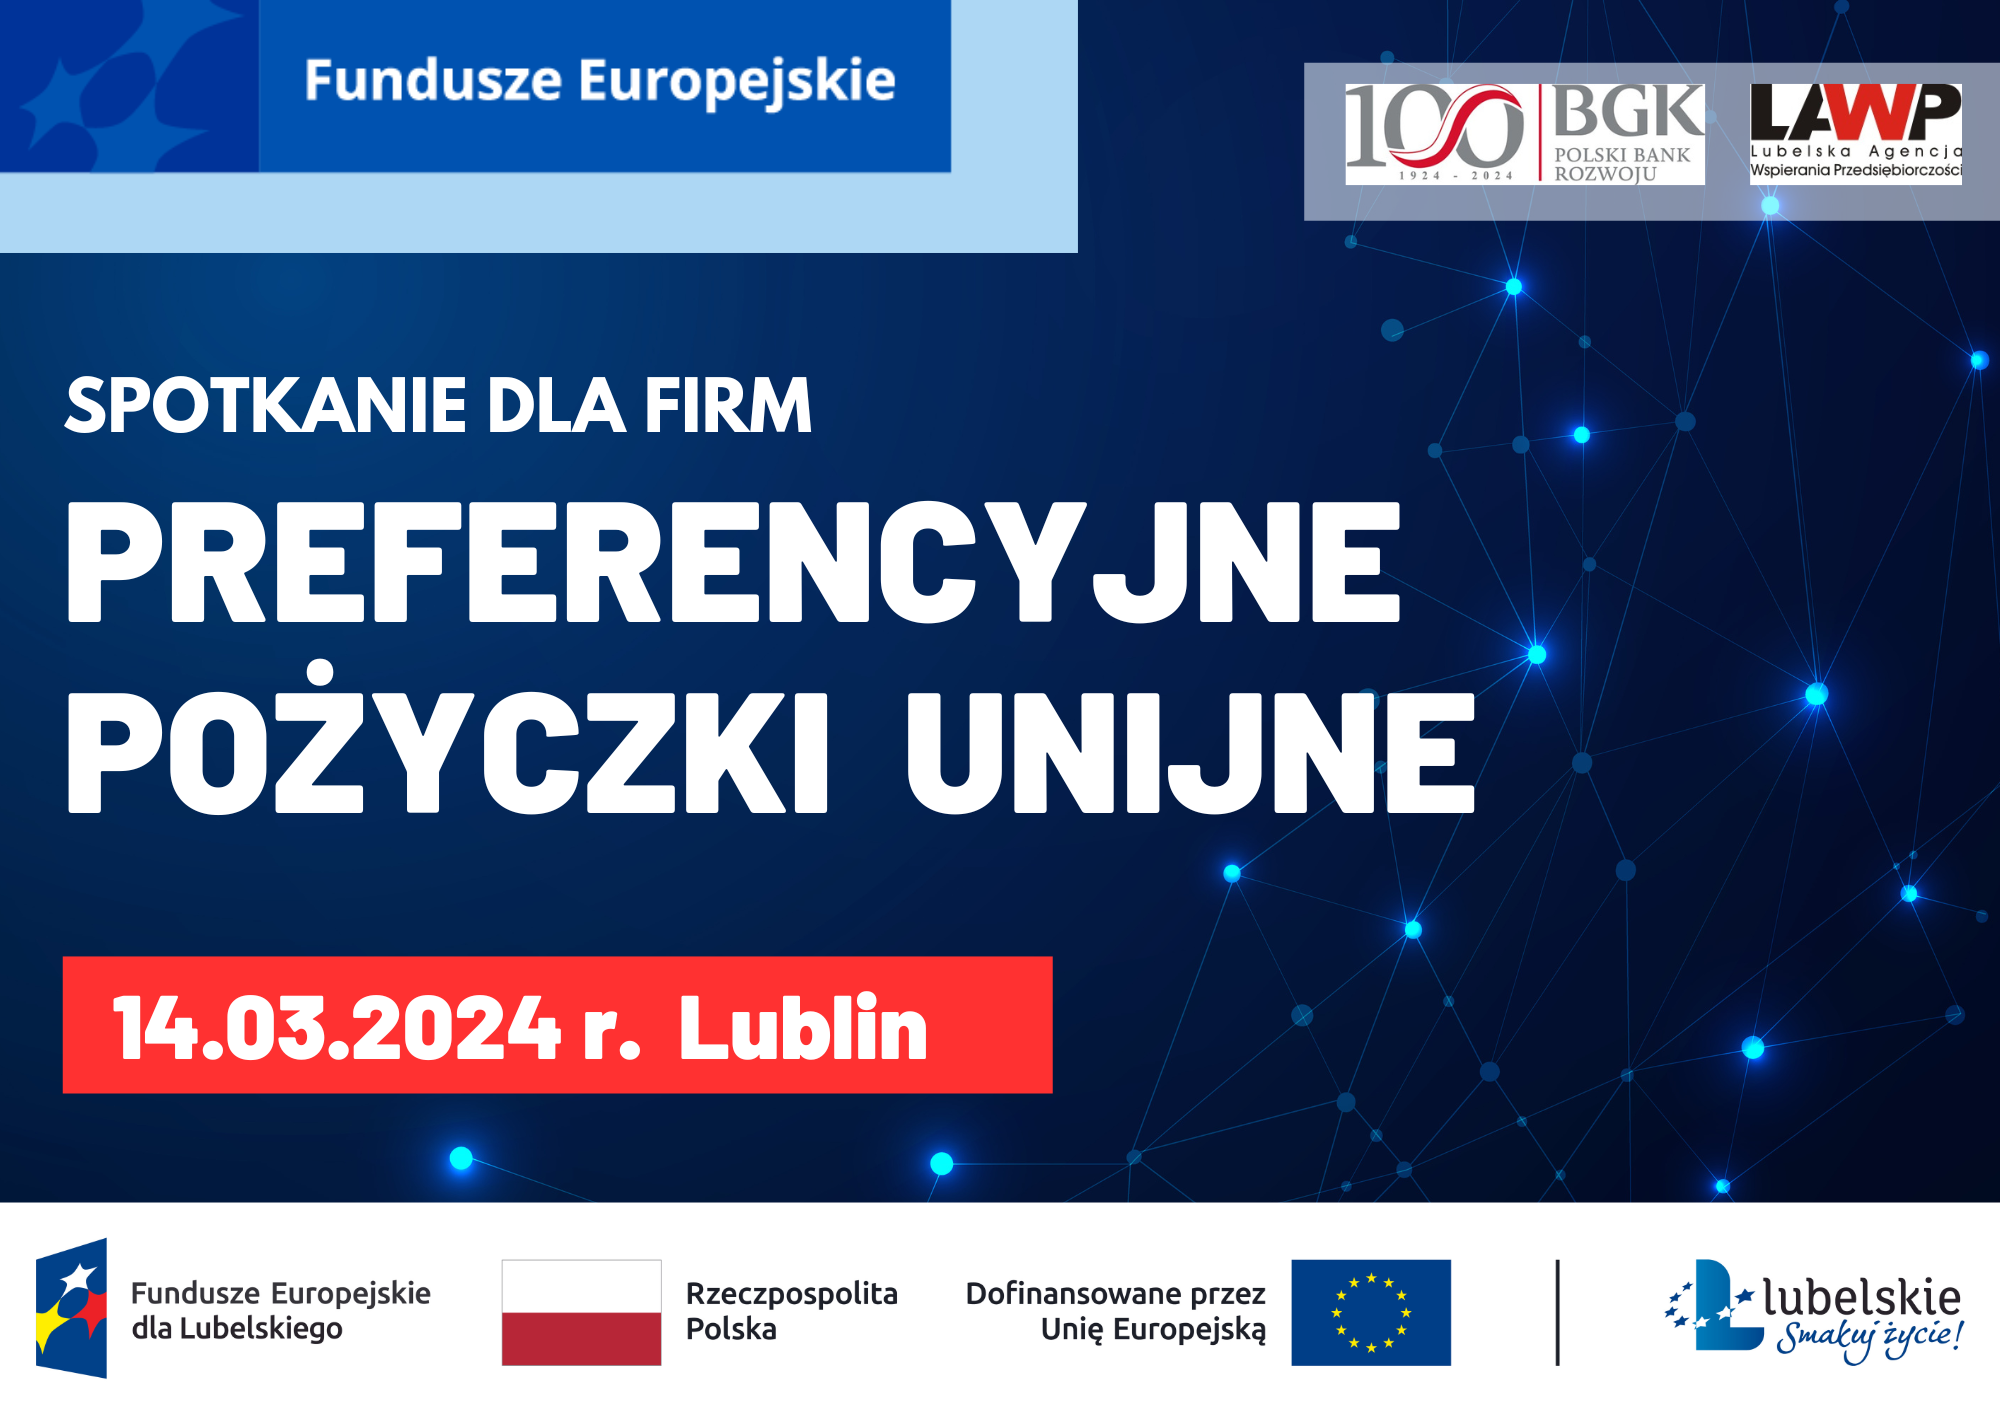 Plakat wydarzenia z tekstem "Spotkanie dla Firm, Preferencyjne Pożyczki Unijne, 14.03.2024 r. Lublin" z grafiką sieci i logo UE, Polski oraz partnerów.